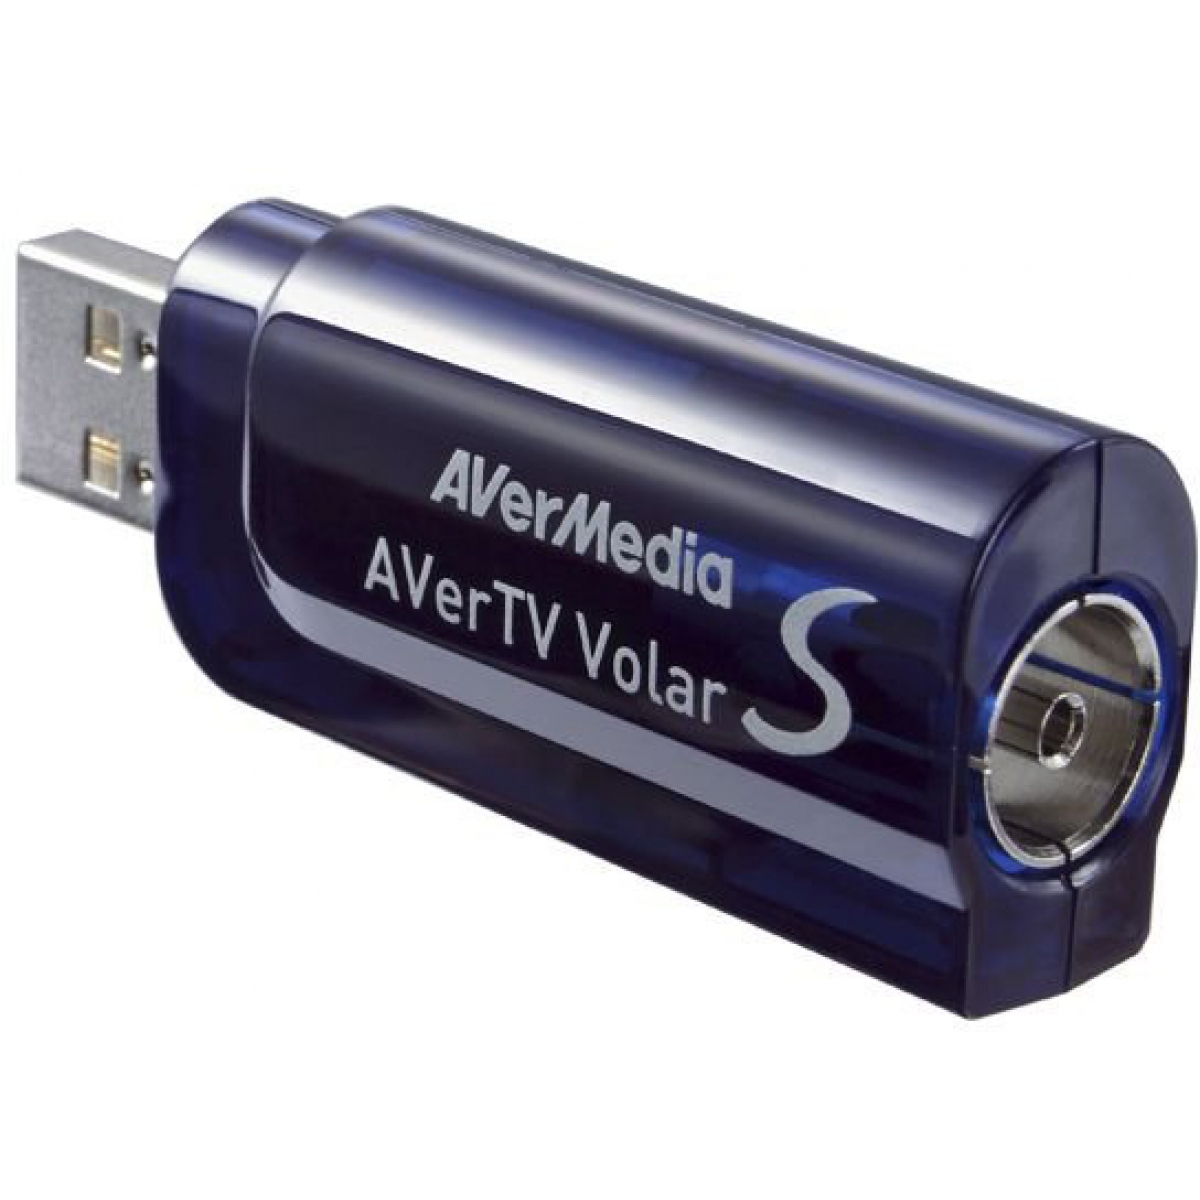 Receptor de TV Avermedia TV Volar S HD A865R USB